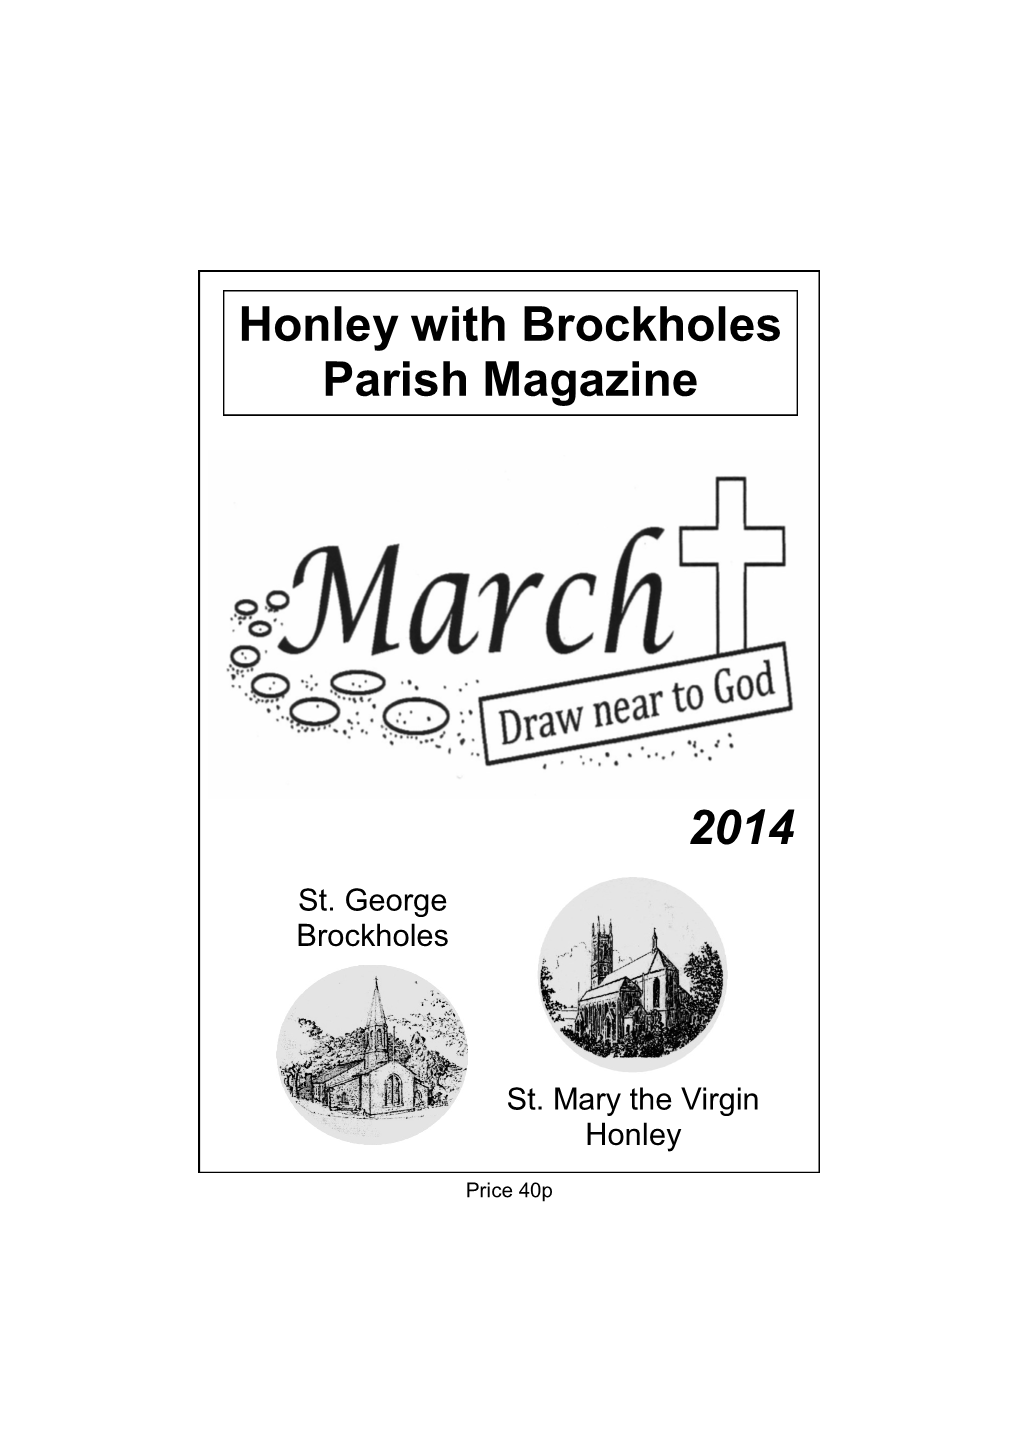 2014 Honley with Brockholes Parish Magazine